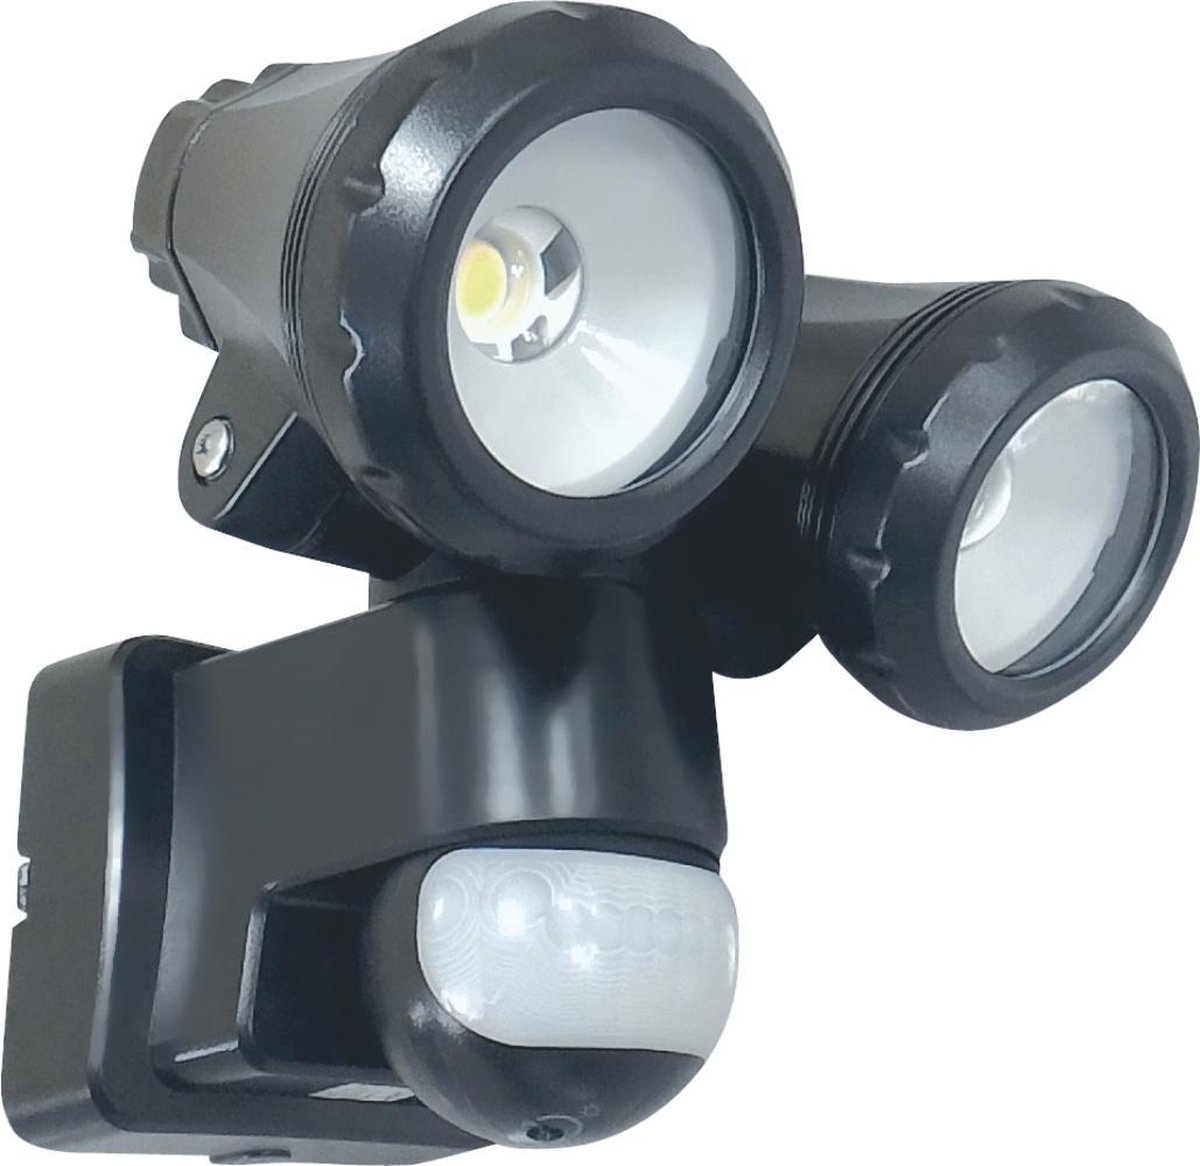 ELRO LT3510P 2-Kops LED Buitenlamp met Bewegingssensor - 2x10W 1550LM - Zwart - ELRO